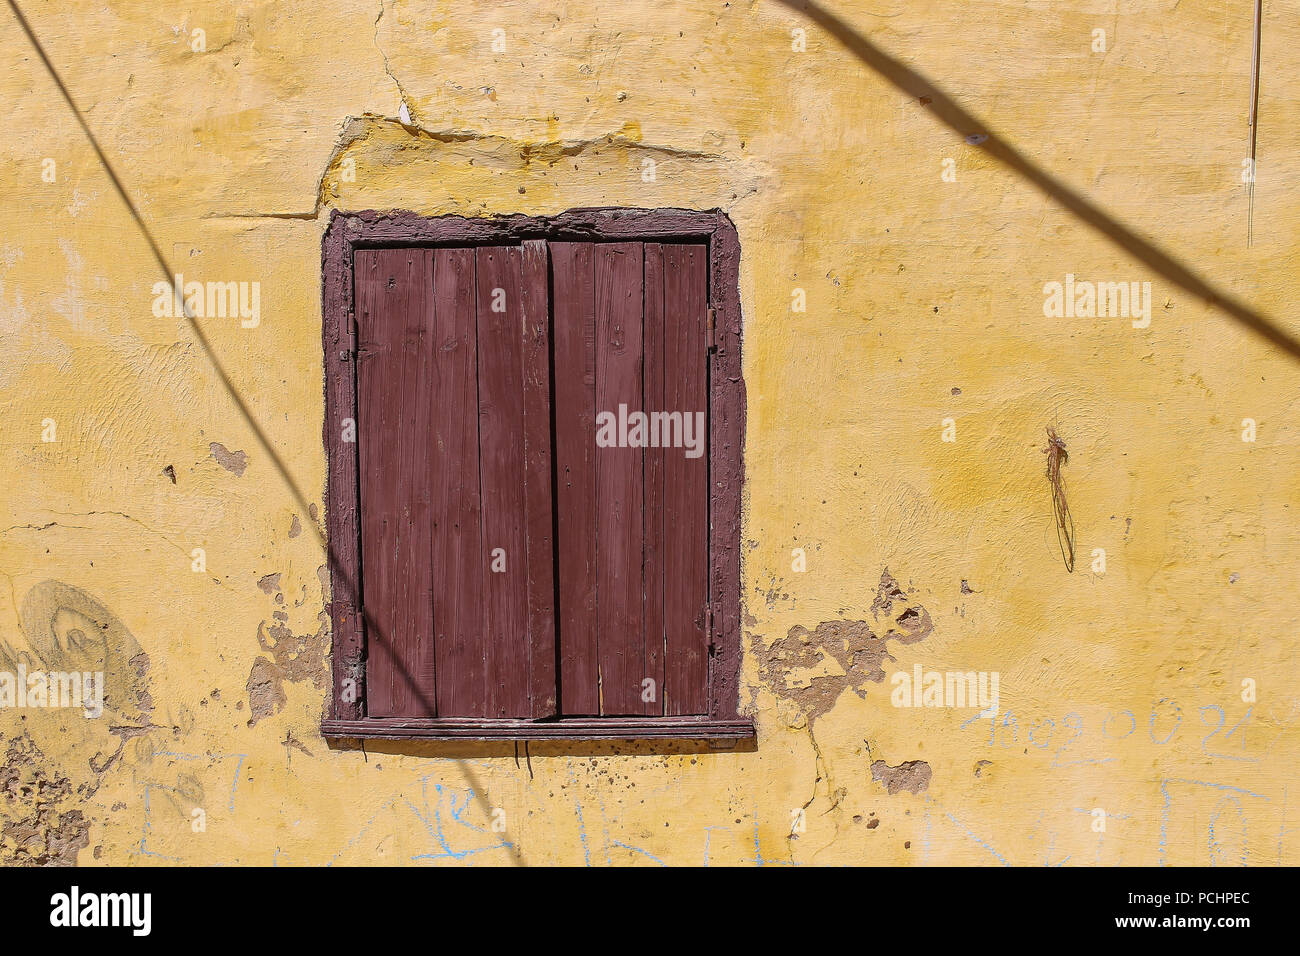 La couleur jaune de l'essuyé une façade de maison à El Jadida, Maroc. Fenêtre avec un obturateur fermé brun en bois. Les lignes d'ombre des câbles dans le st Banque D'Images